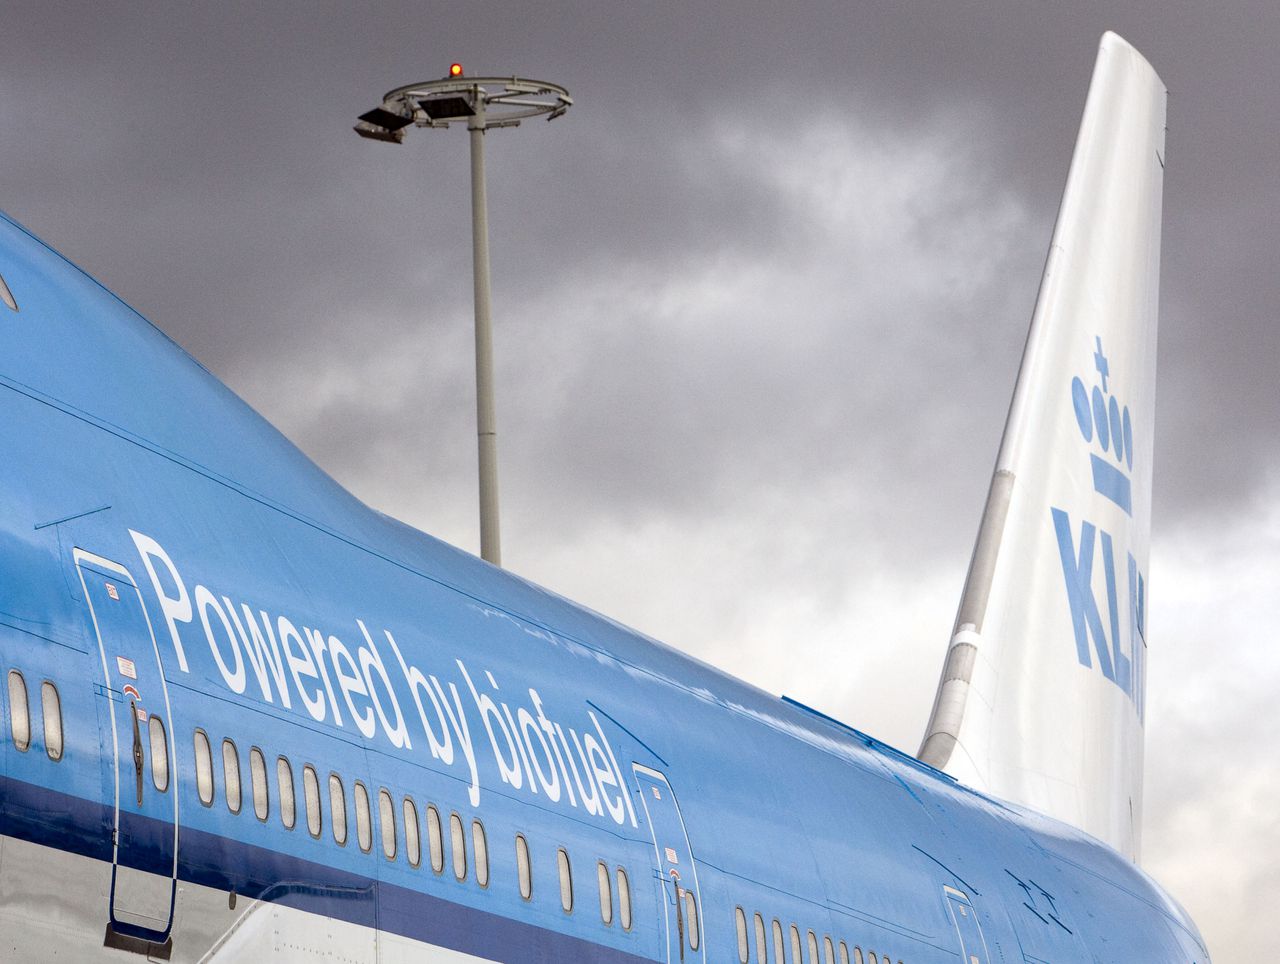 Passagiersvliegtuigen van KLM en Garuda zijn vorige maand boven Uitgeest bijna op elkaar gebotst.